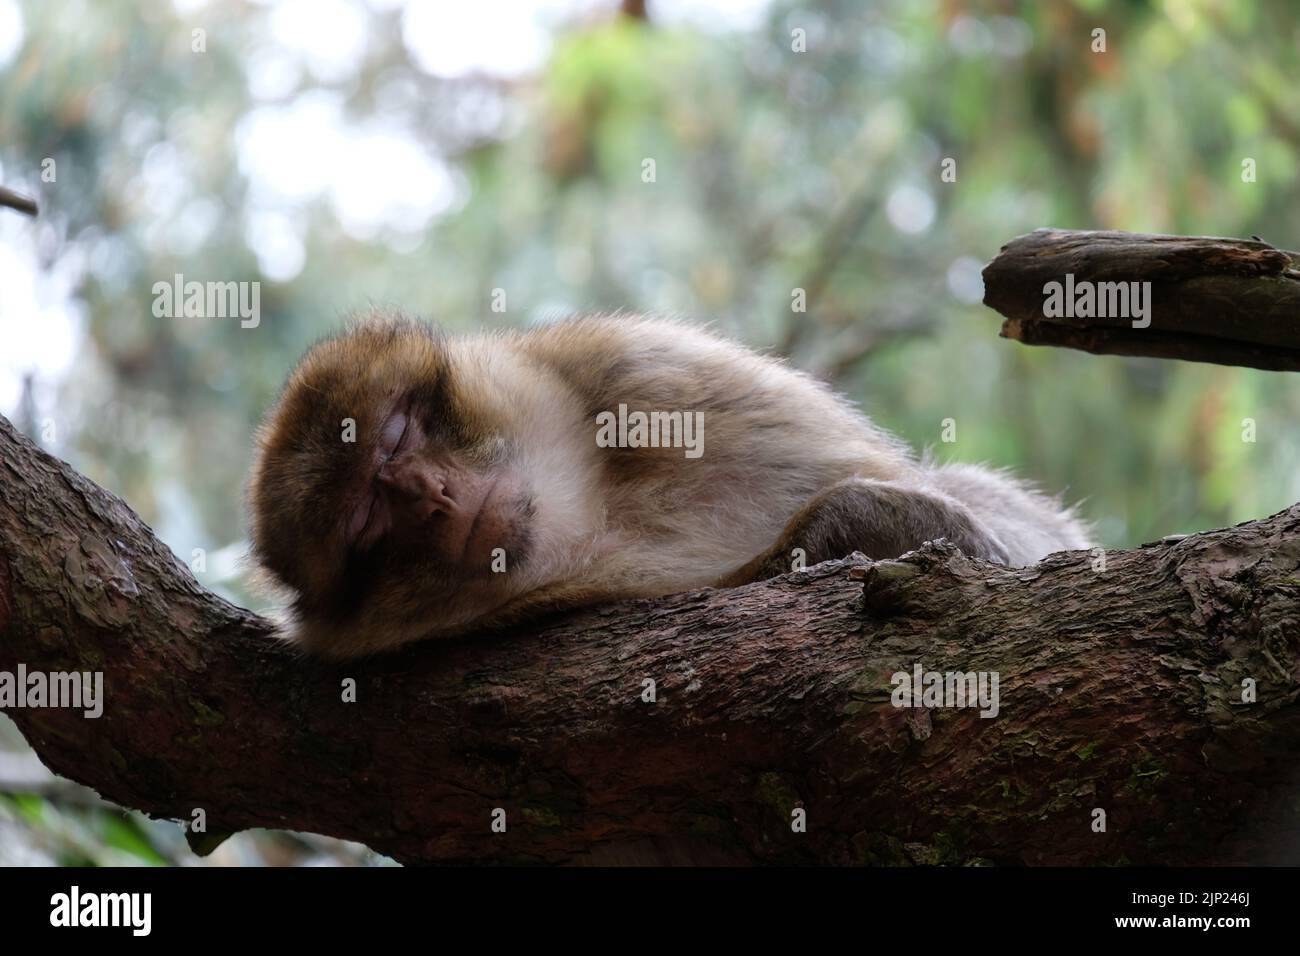 Magot barbary ape dormire e rilassarsi su un tronco d'albero Foto Stock